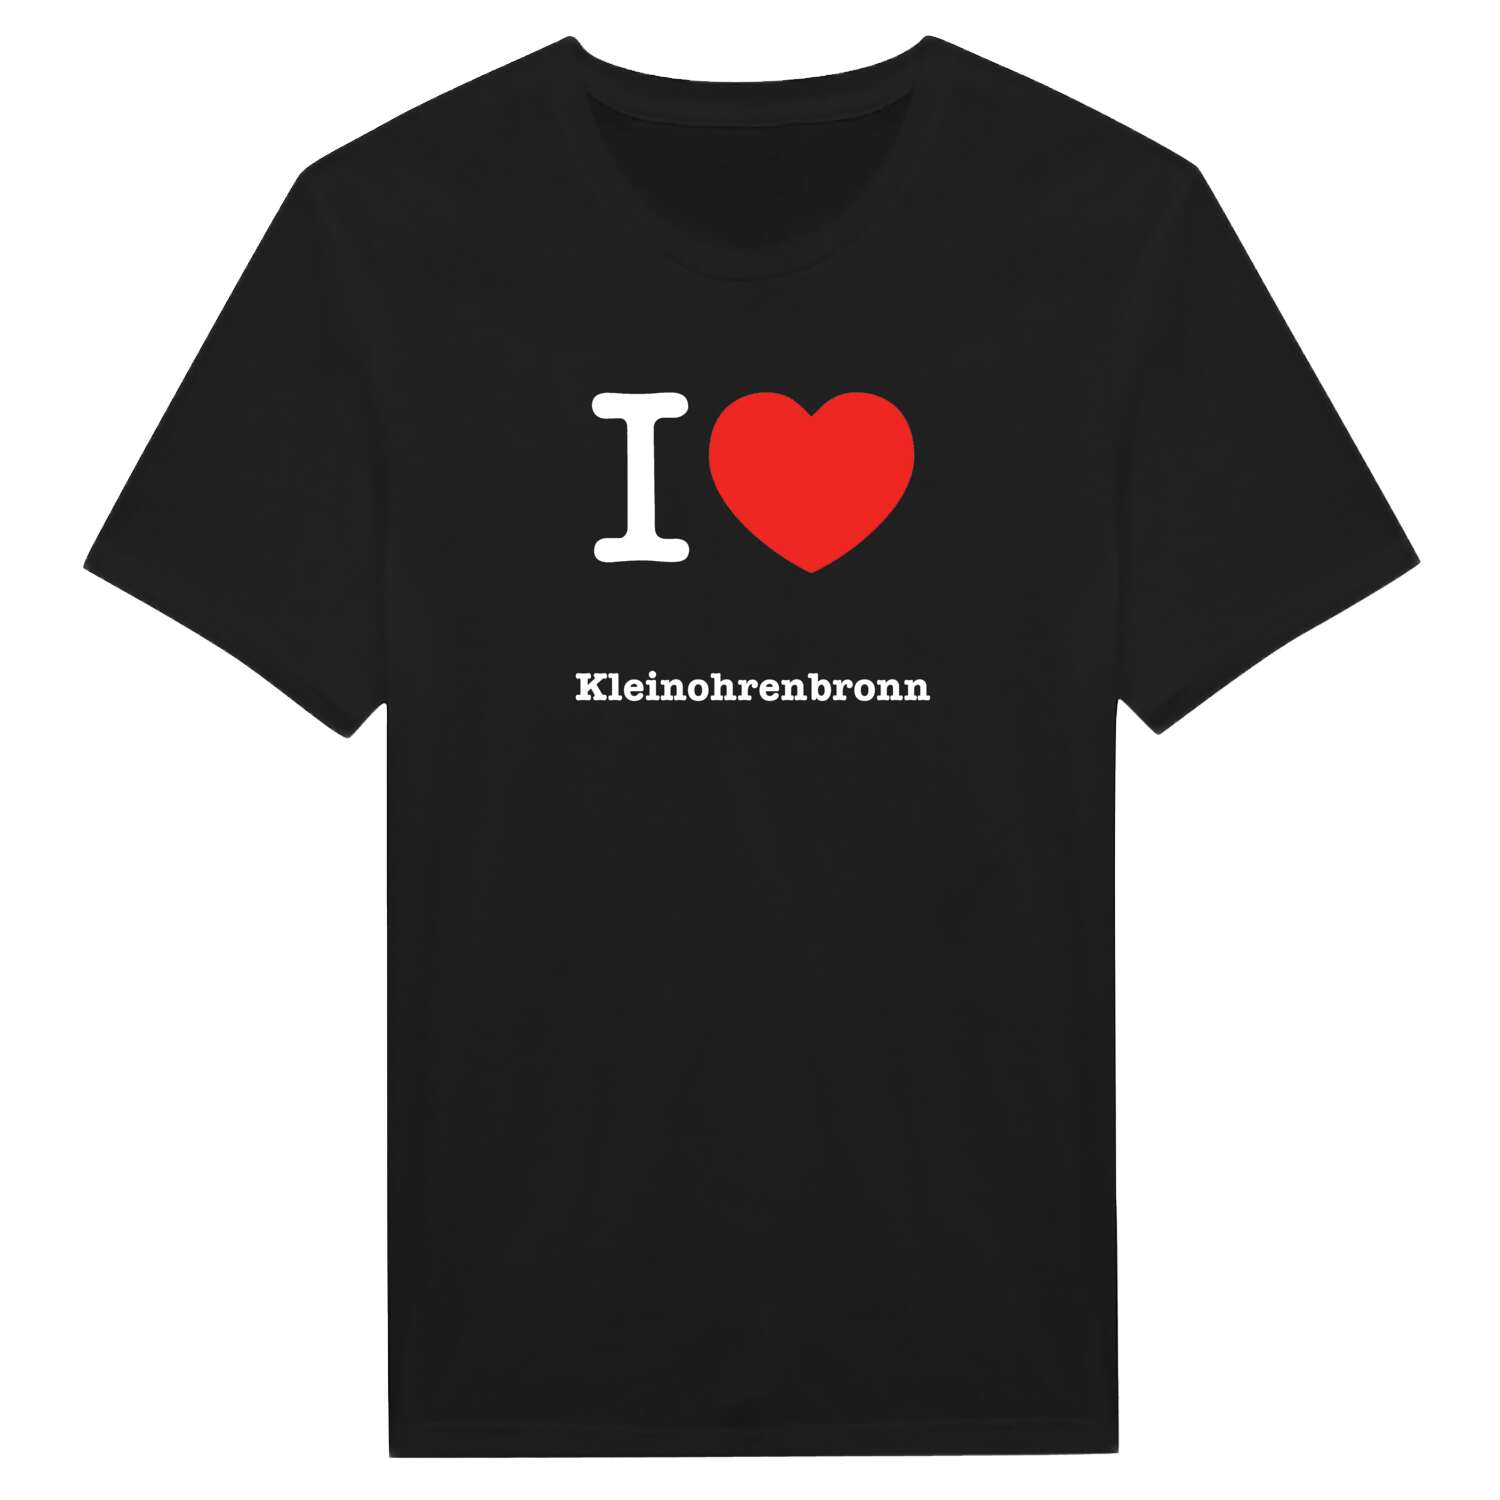 Kleinohrenbronn T-Shirt »I love«